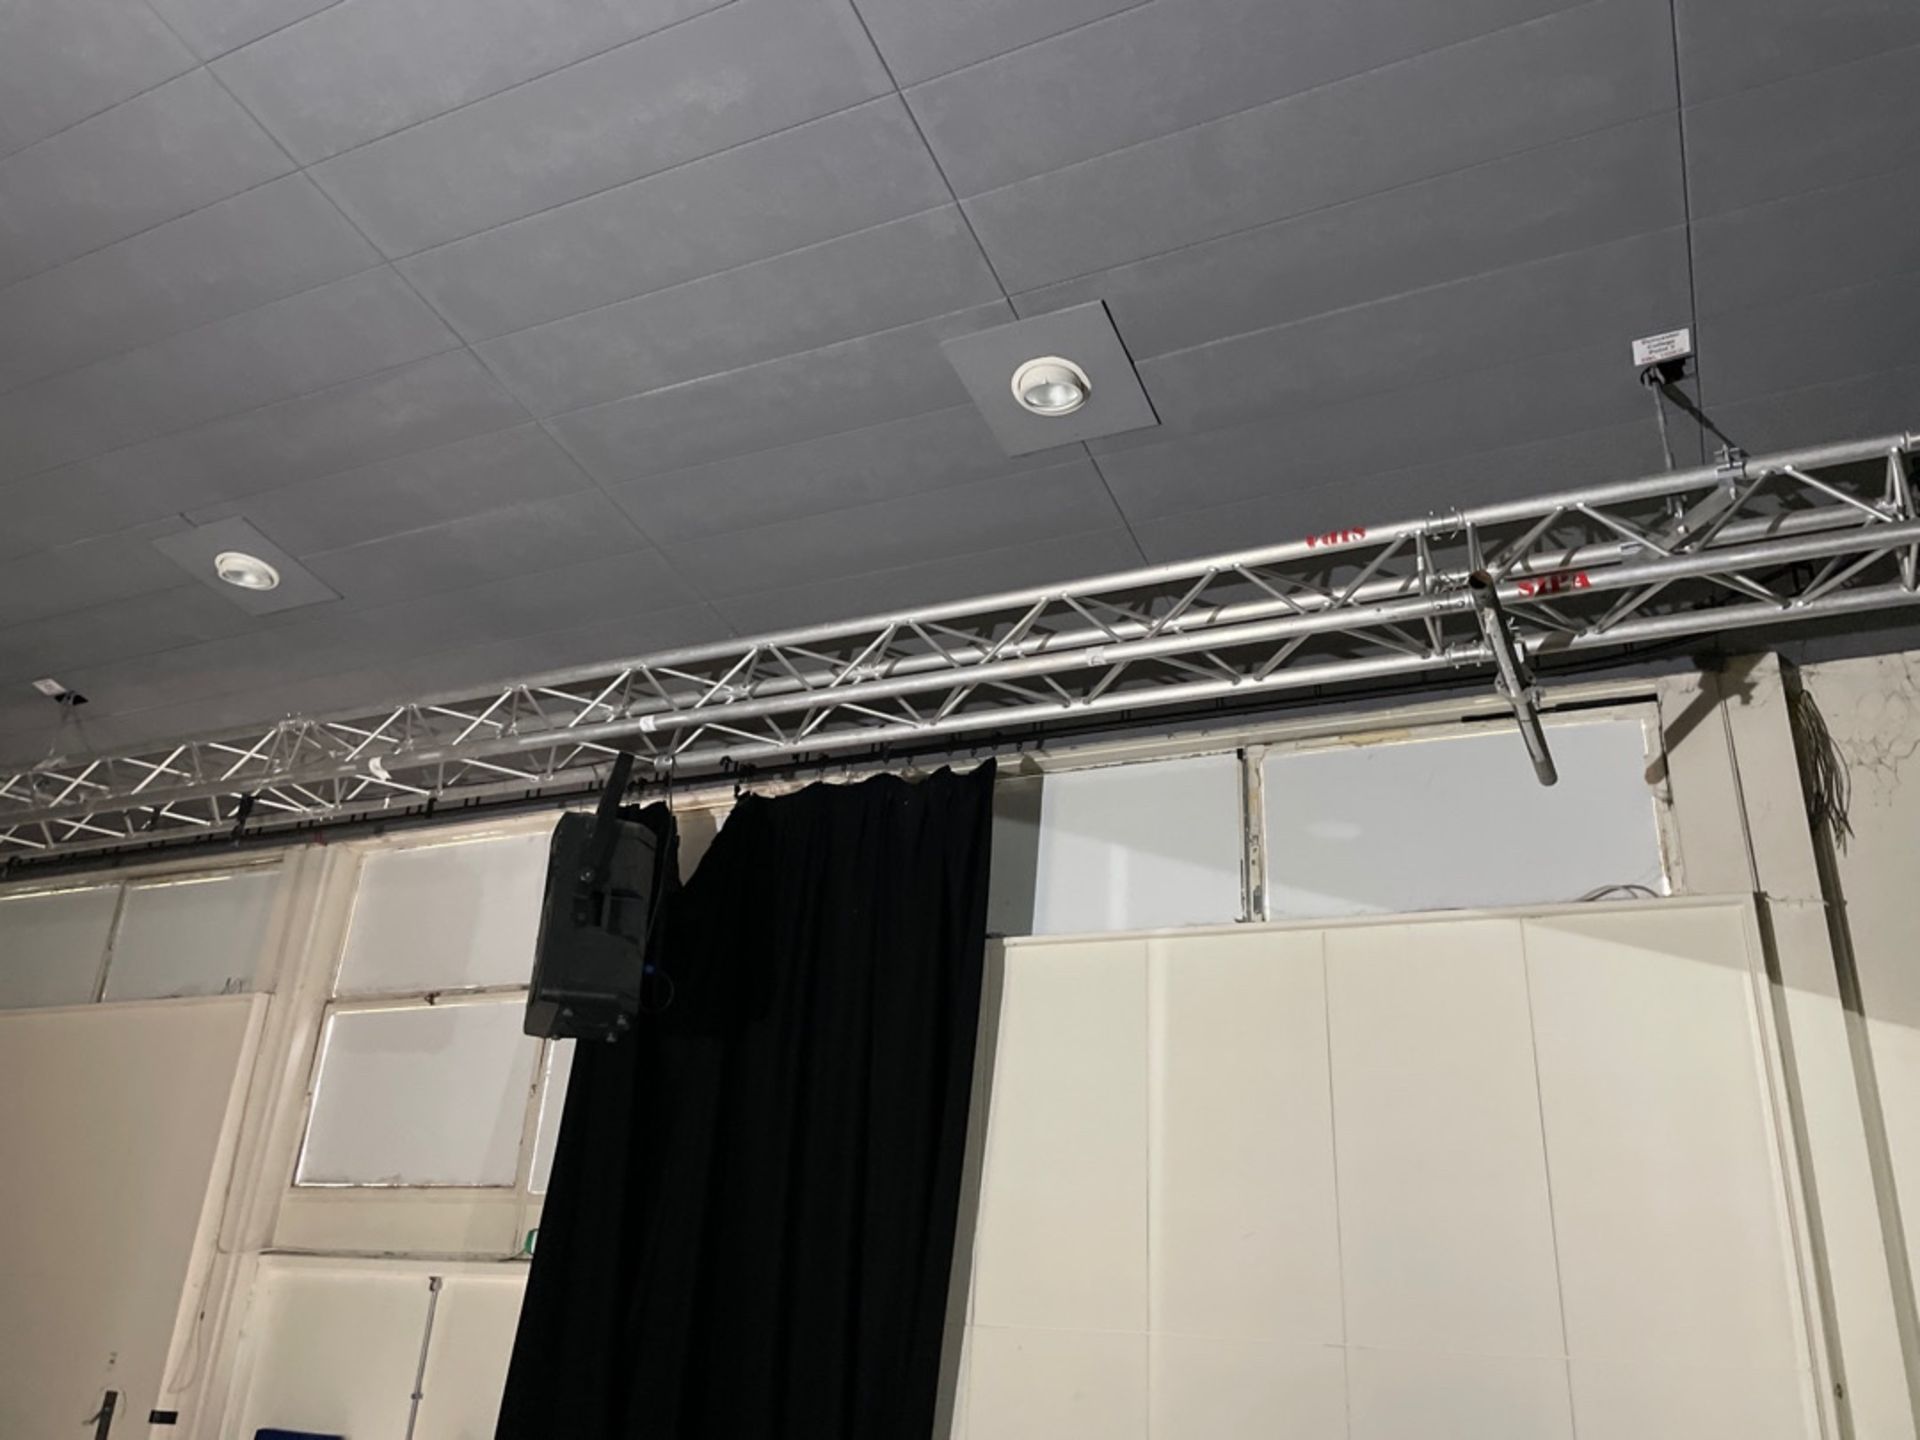 Lighting Gantrys 3 Off & Pair Of RCF Speakers - Image 3 of 4